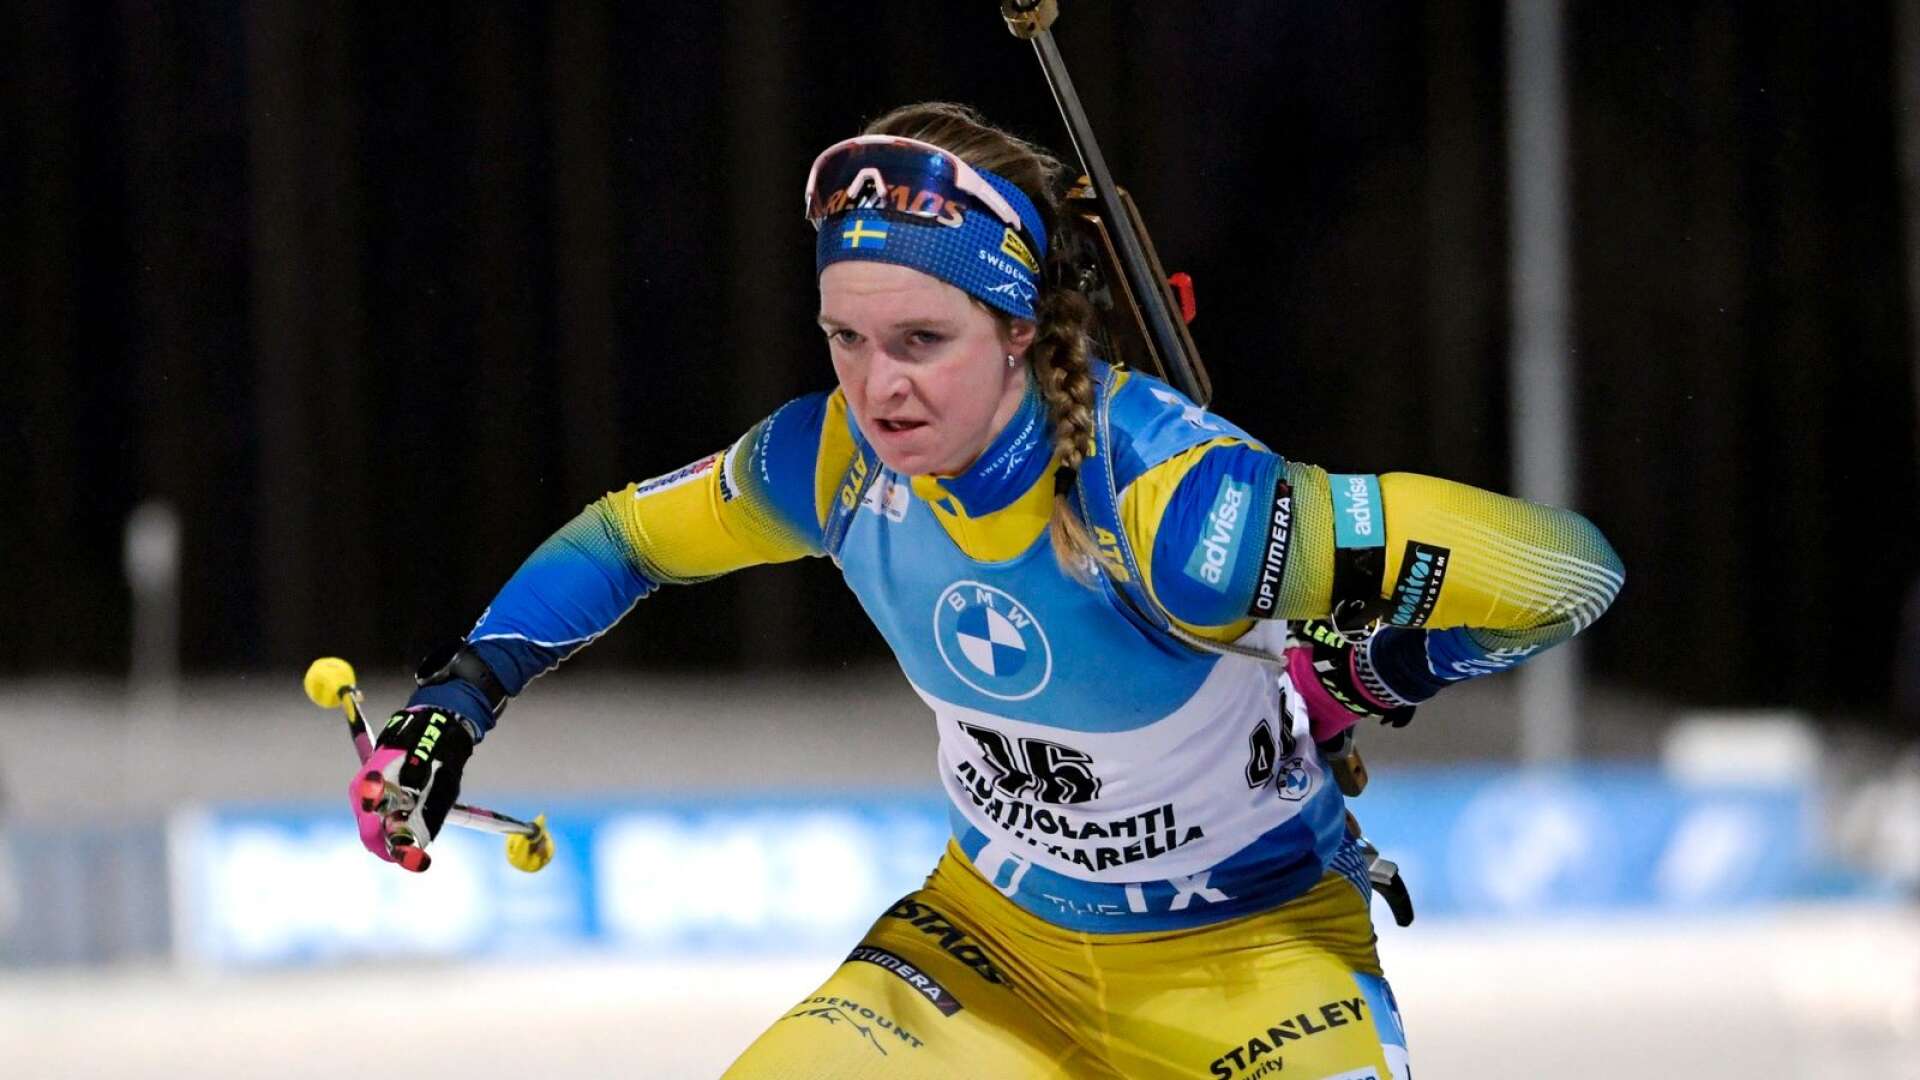 VM nästa. Mona Brorsson är en av fem tjejer i den svenska VM-truppen.